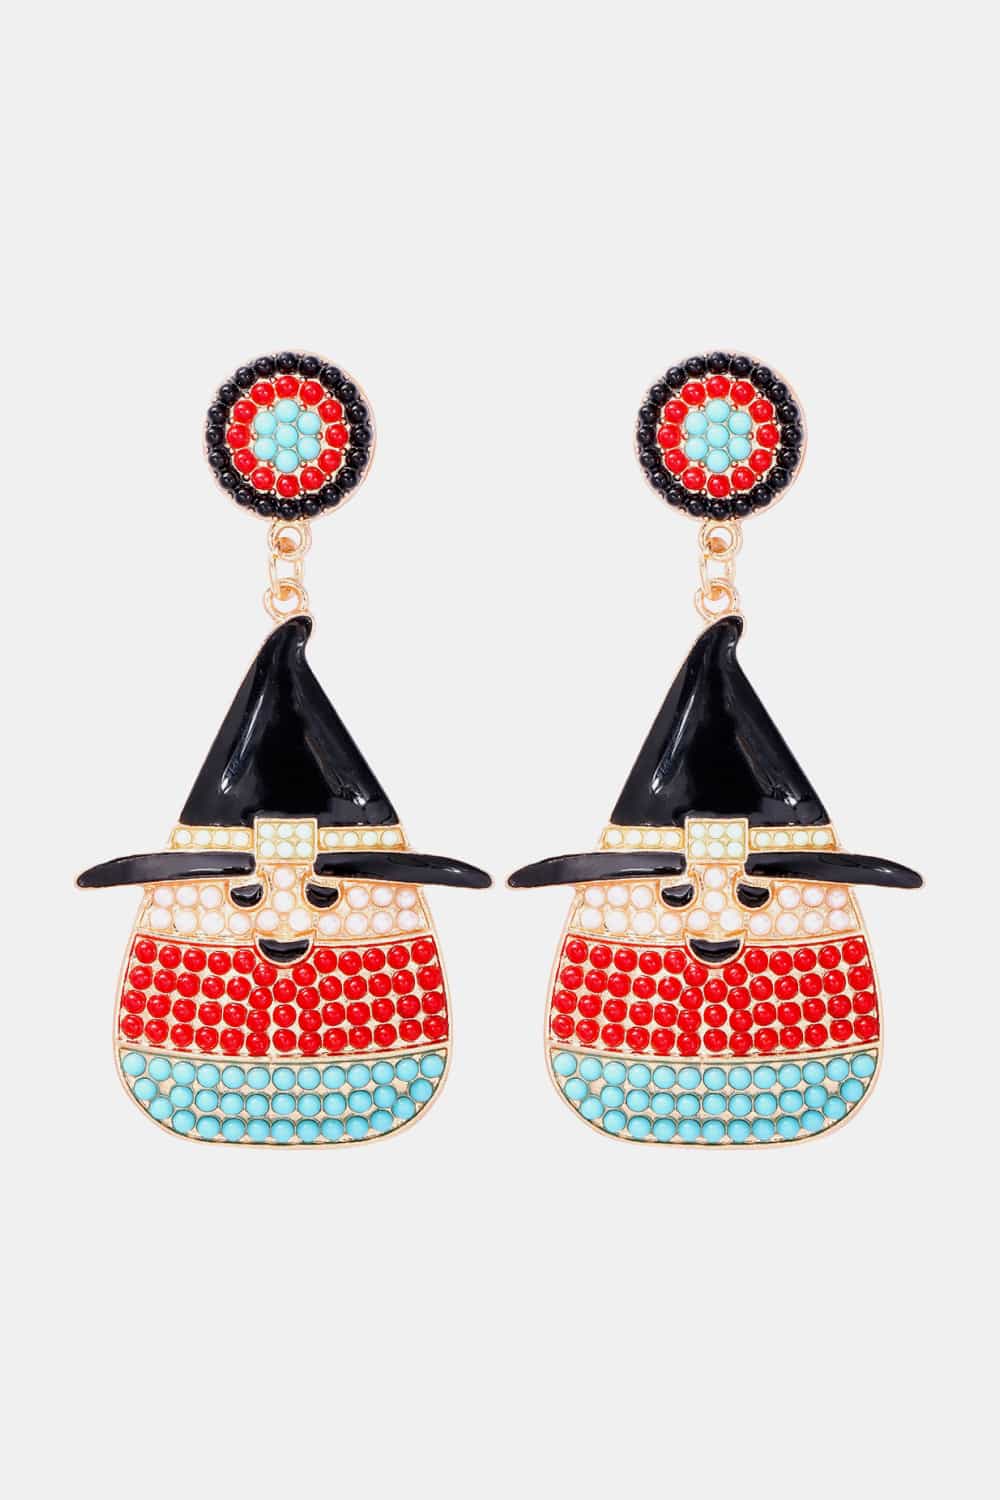 Witch’s Hat Shape Synthetic Pearl Dangle Earrings - Red / One Size - Women’s Jewelry - Earrings - 5 - 2024